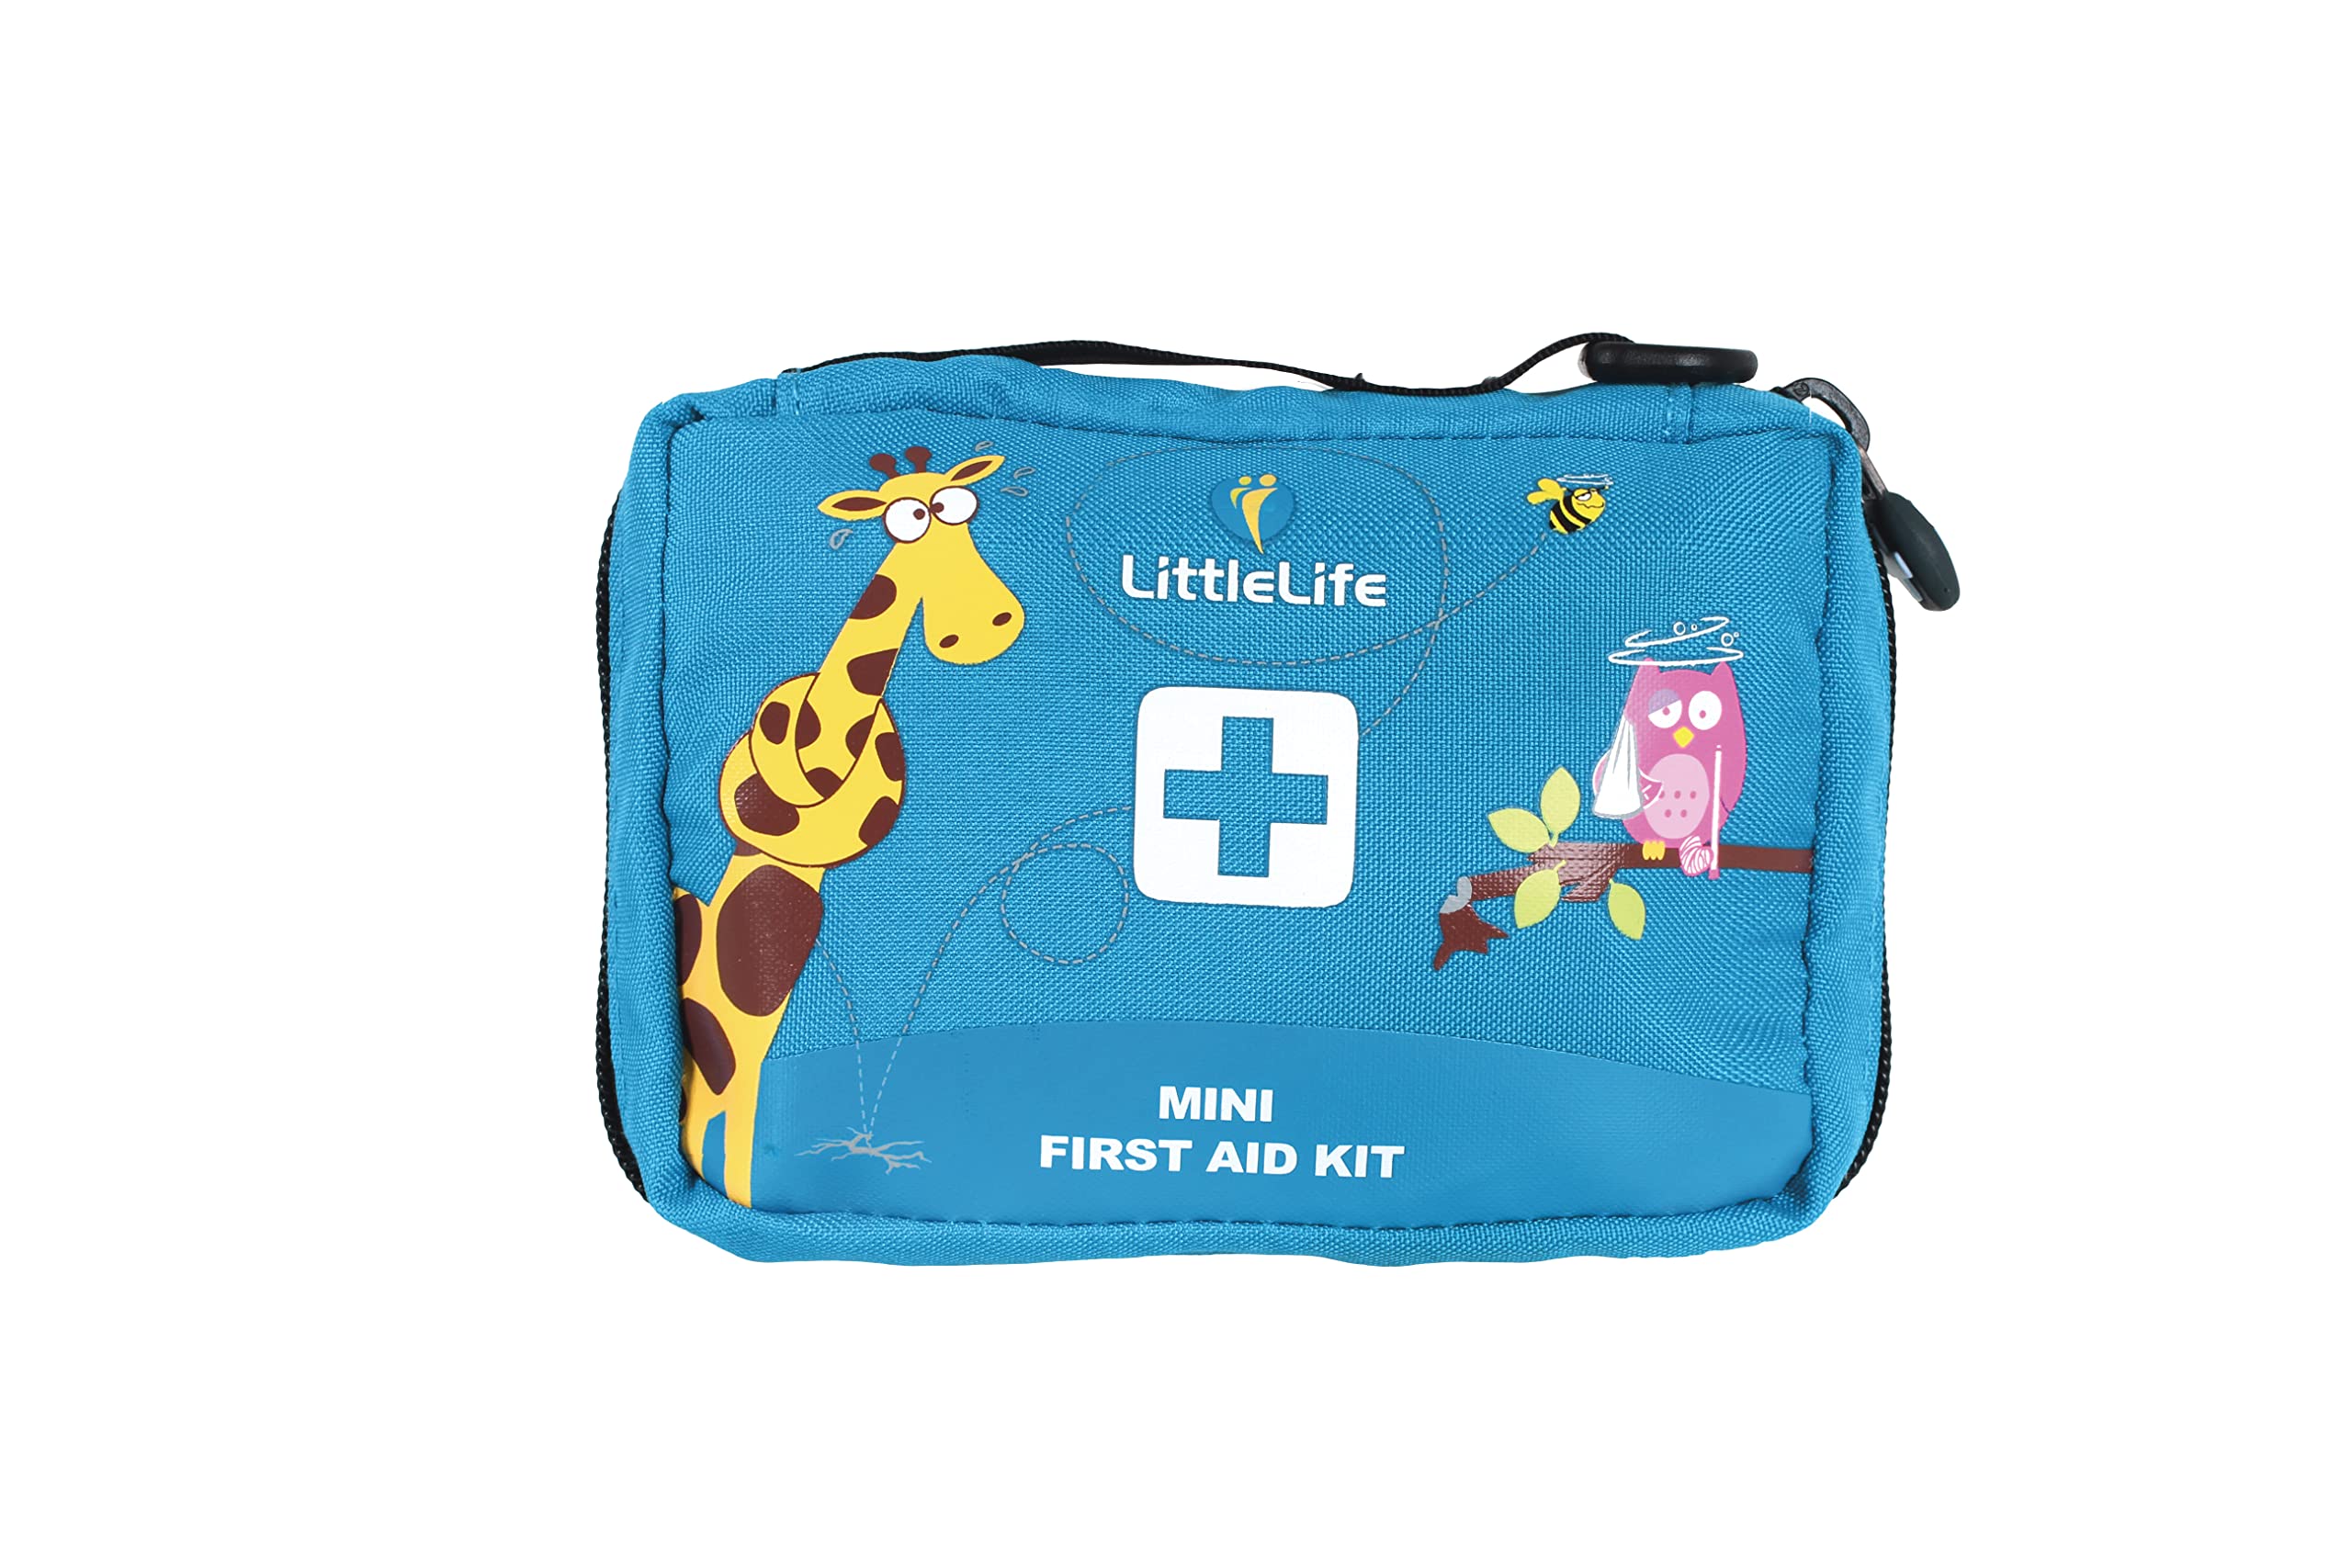 LittleLife Mini Erste-Hilfe-Kit mit CE-zertifizierten Inhalten, ideal für Haus und Familie Urlaub zu behandeln gemeinsame Verletzungen